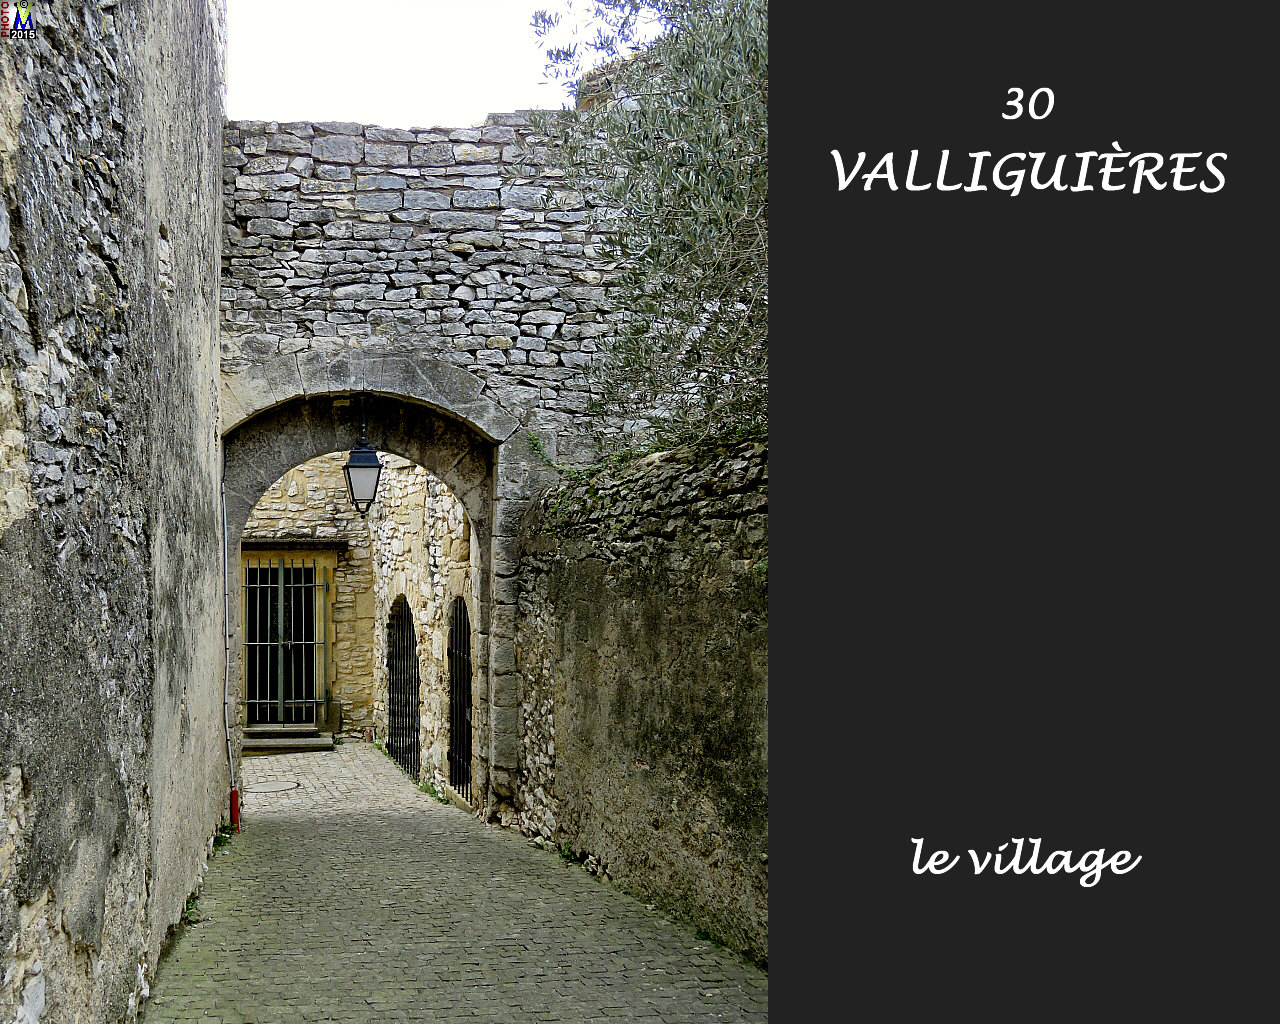 30VALLIGUIERES_village_126.jpg